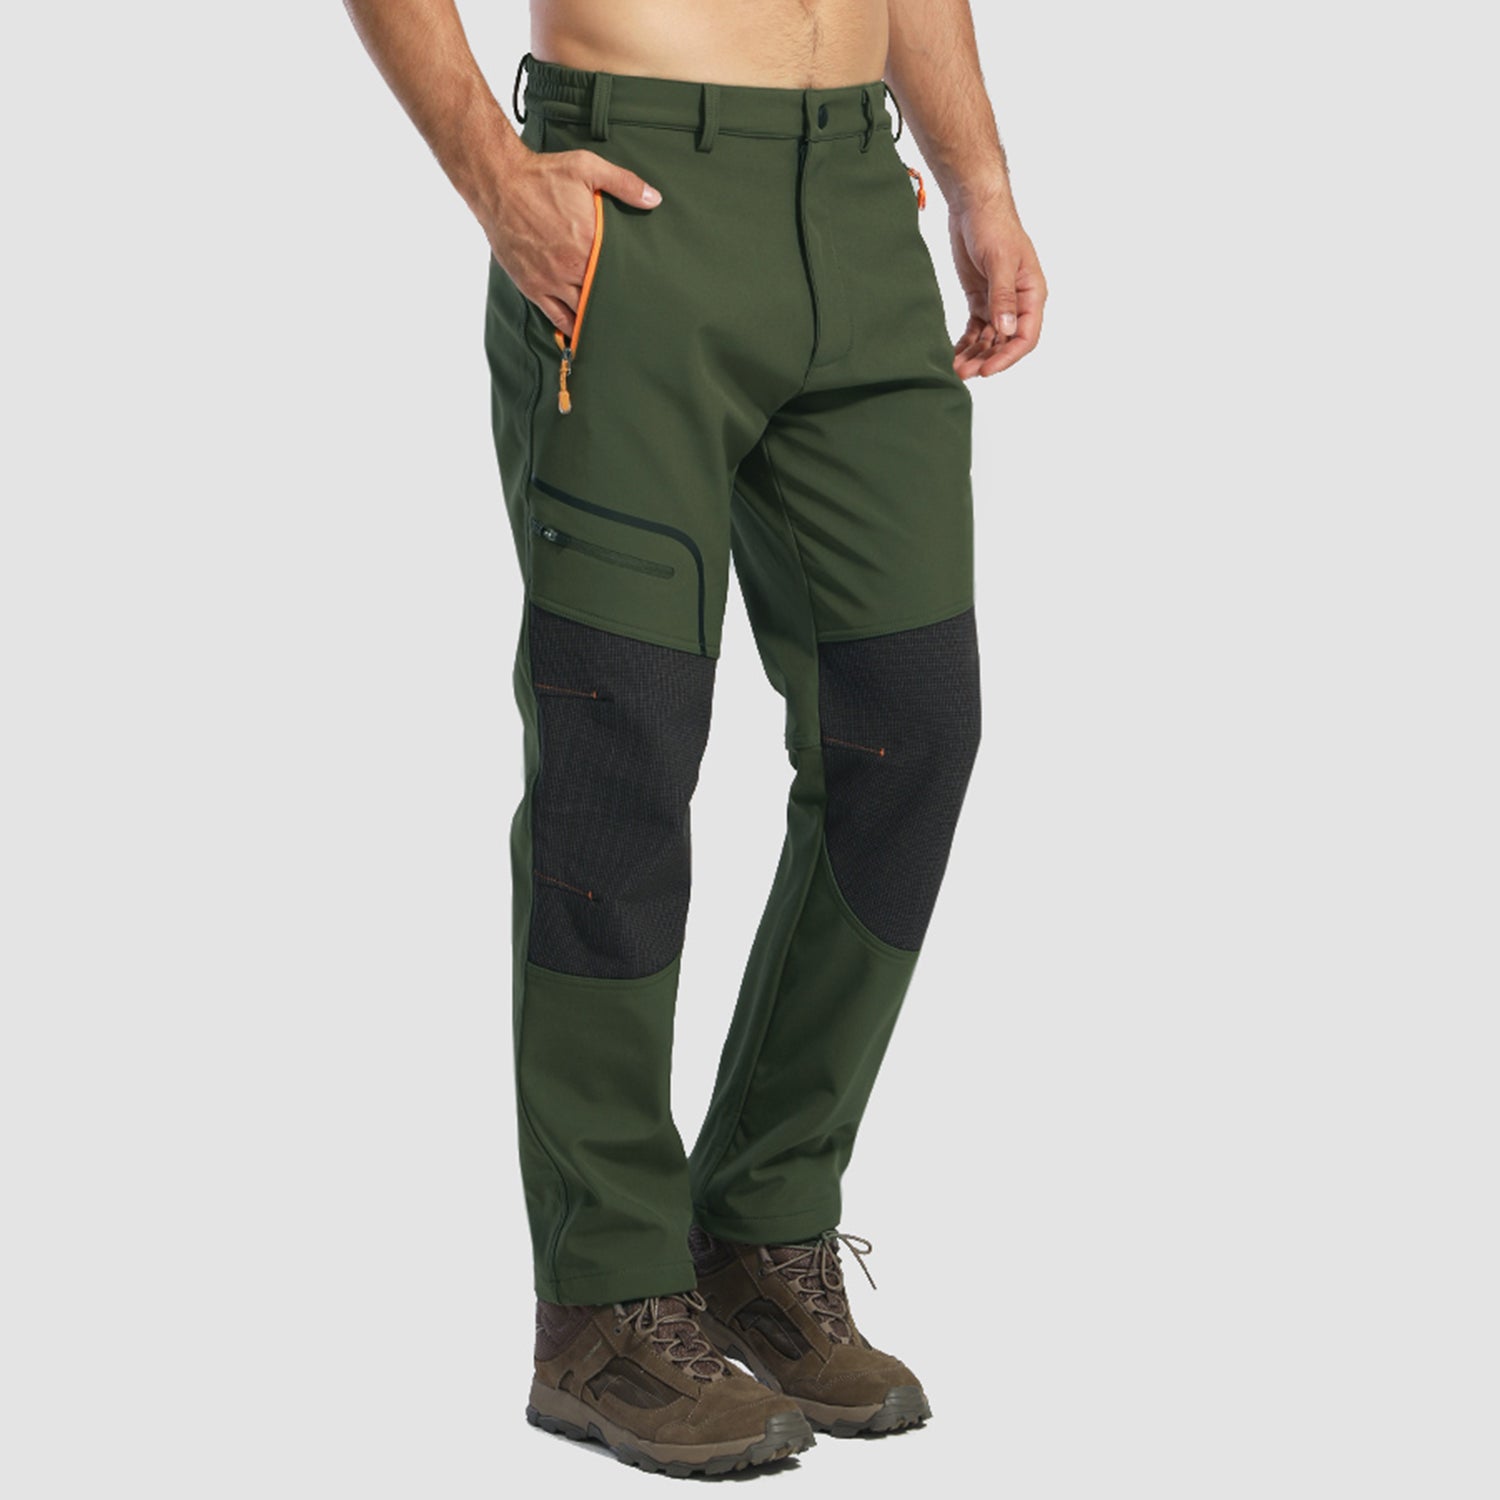 Men's Pants, Bottoms for Outdoor Wear